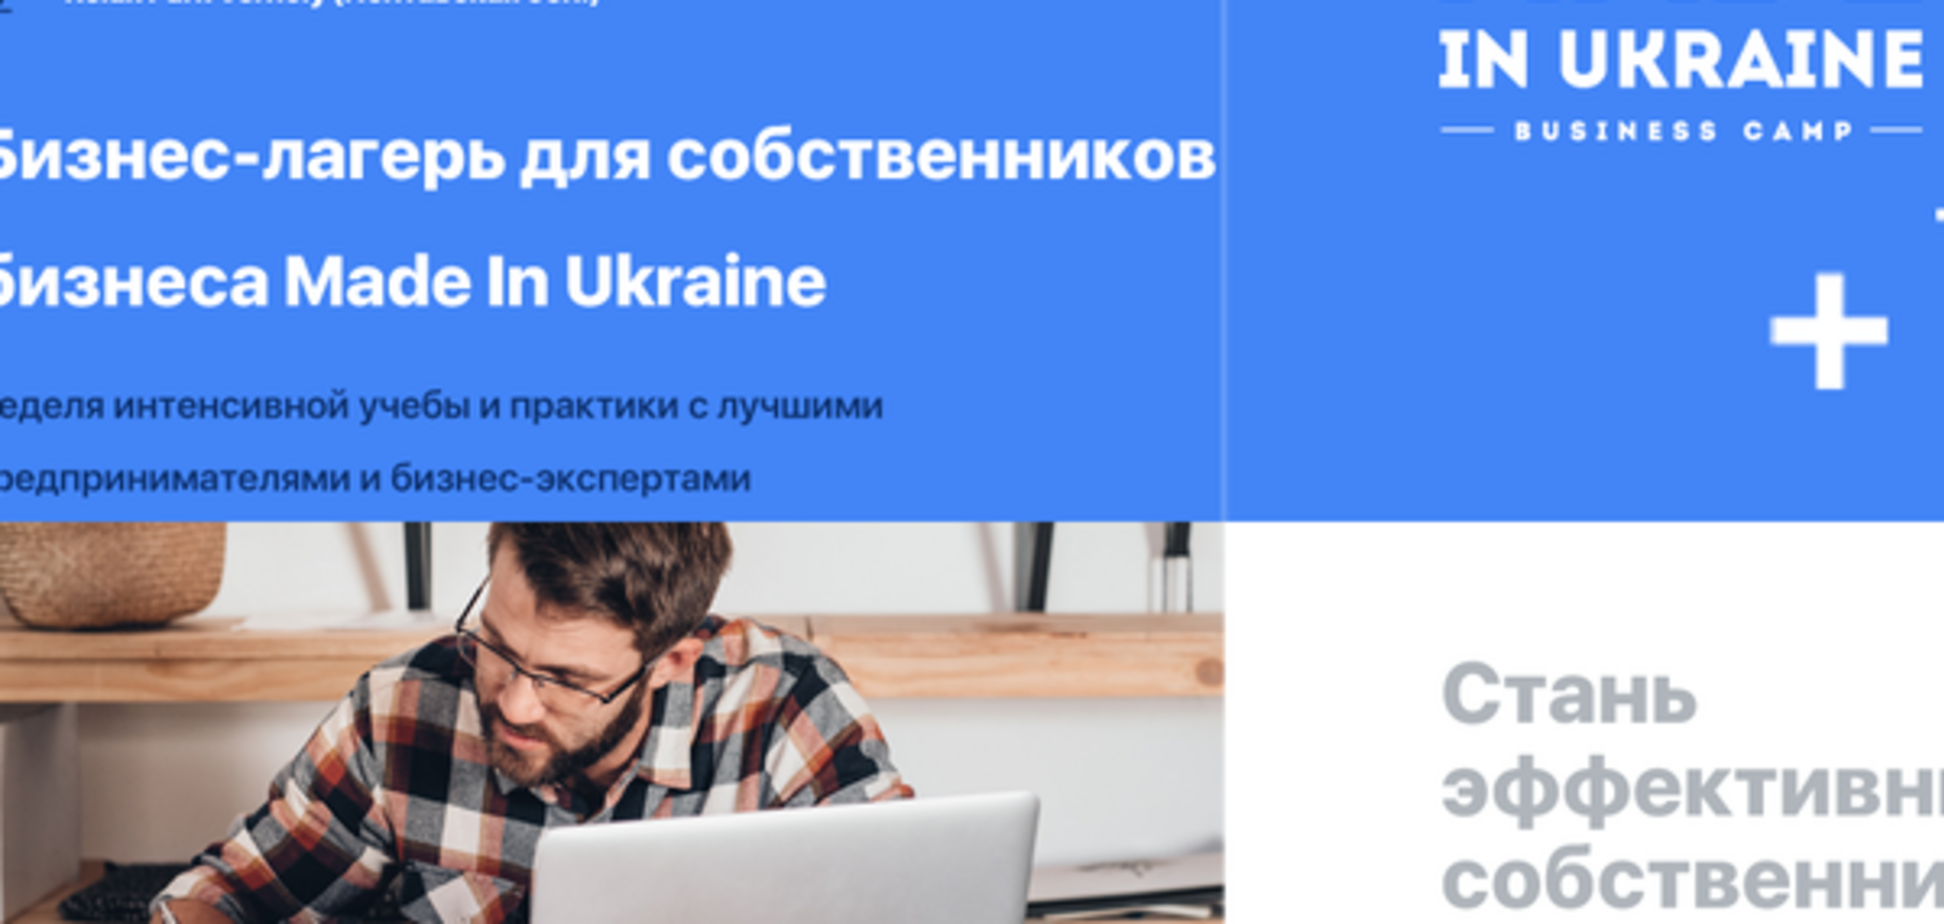 5 решений, которые бизнес-лагерь Made in Ukraine дает собственнику бизнеса